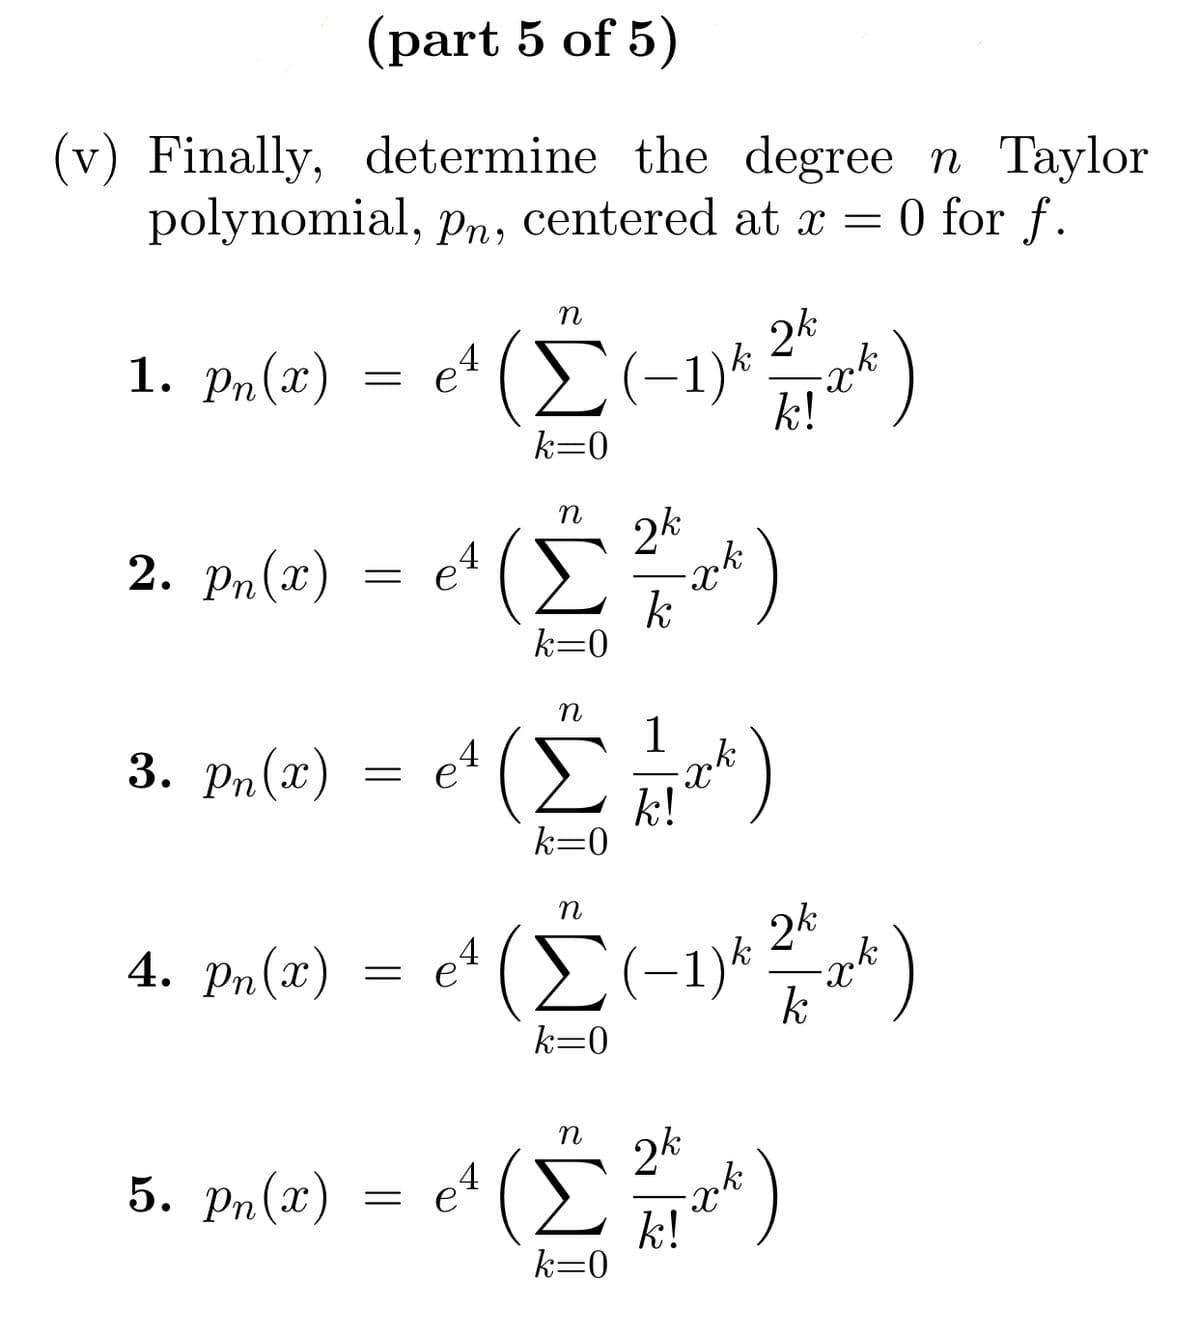 (part 5 of 5)
(v) Finally, determine the degree n Taylor
polynomial, pn, centered at x = 0 for f.
1. pn(2)
=
2. pn(x) :
=
η
et (Σ(-1)* k!
24
k=0
4
e
(Σ)
k=0
η
3. Pa(n) = e (ΣΗ**)
1
4
k!
k=0
όλ
η
5. P«(n) = e (Σ?)
k=0
4)
η
4. P(x) = e' (Σ(-1)* *r*)
24
:
k=0